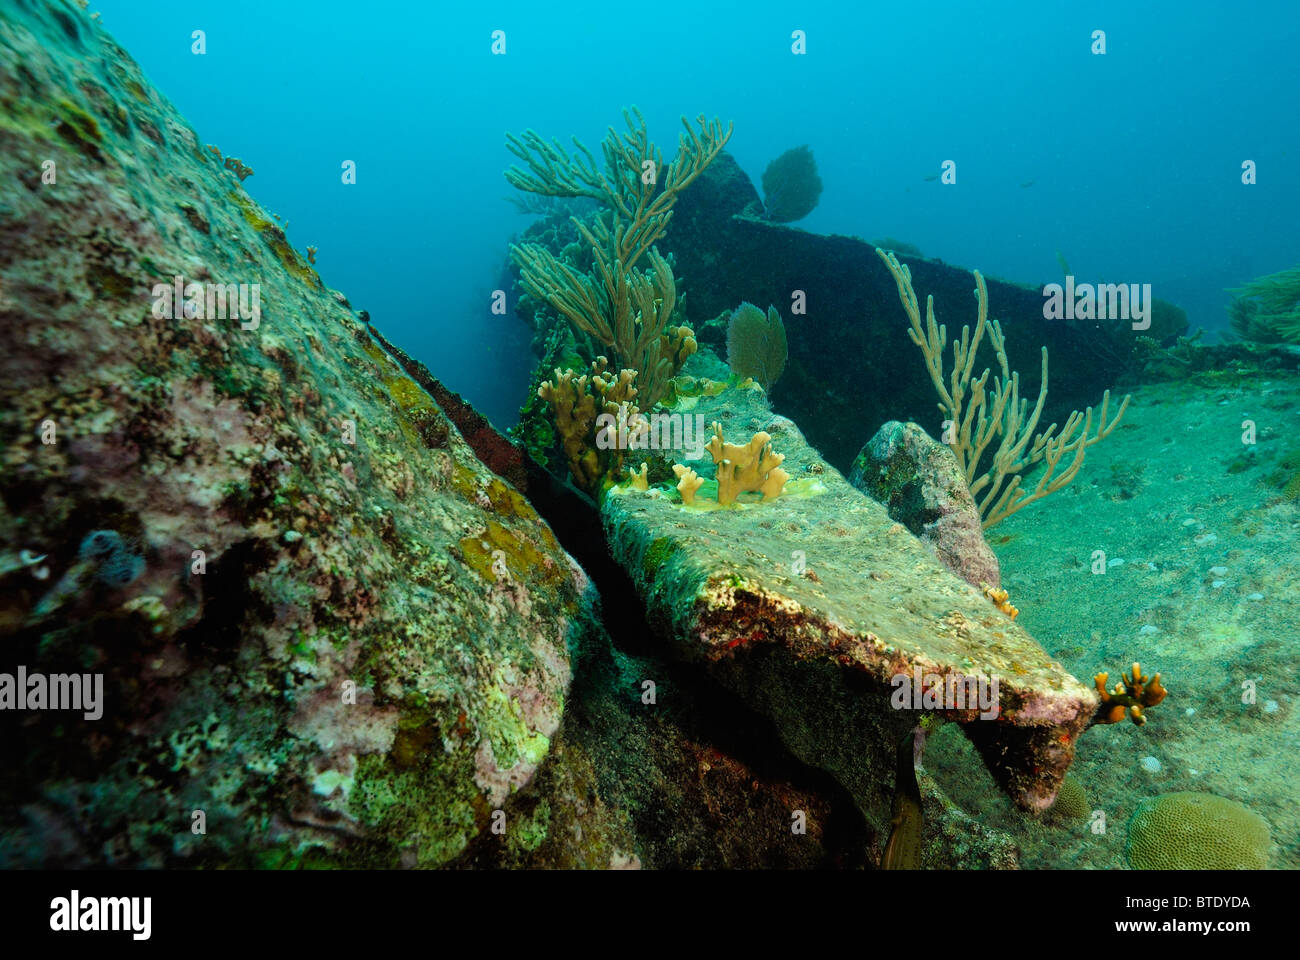 Wreck of Benwood off Key Largo coast, Florida, USA Stock Photo